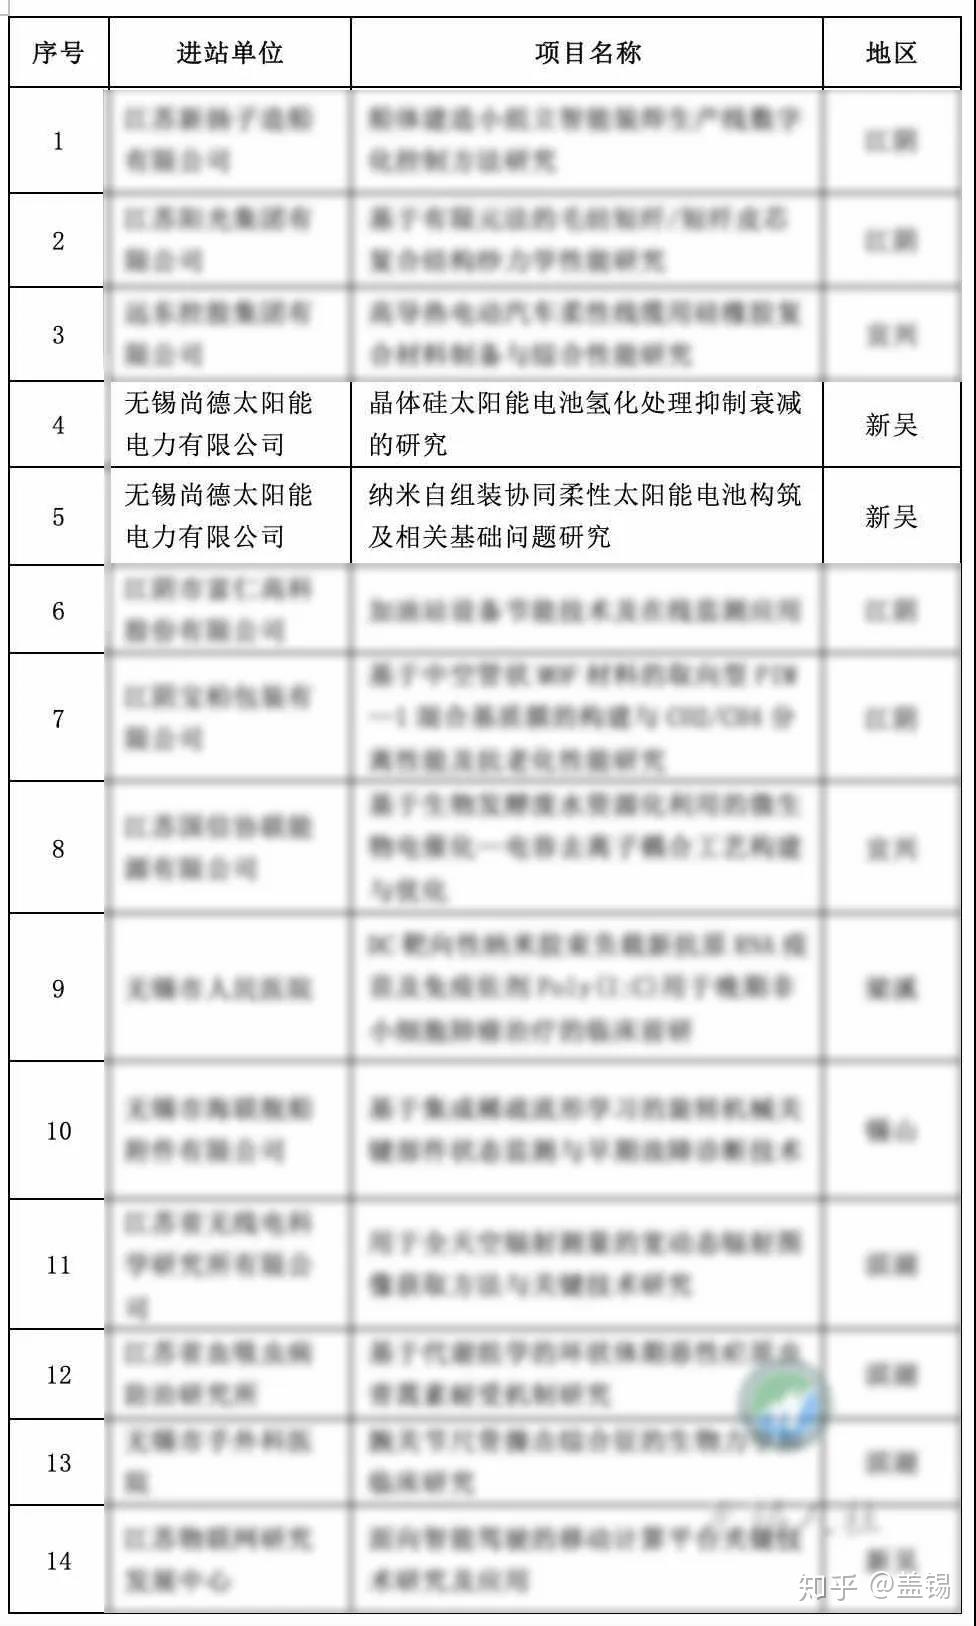 江苏省财政厅公布了2020年江苏省博士后科研资助计划资助项目名单